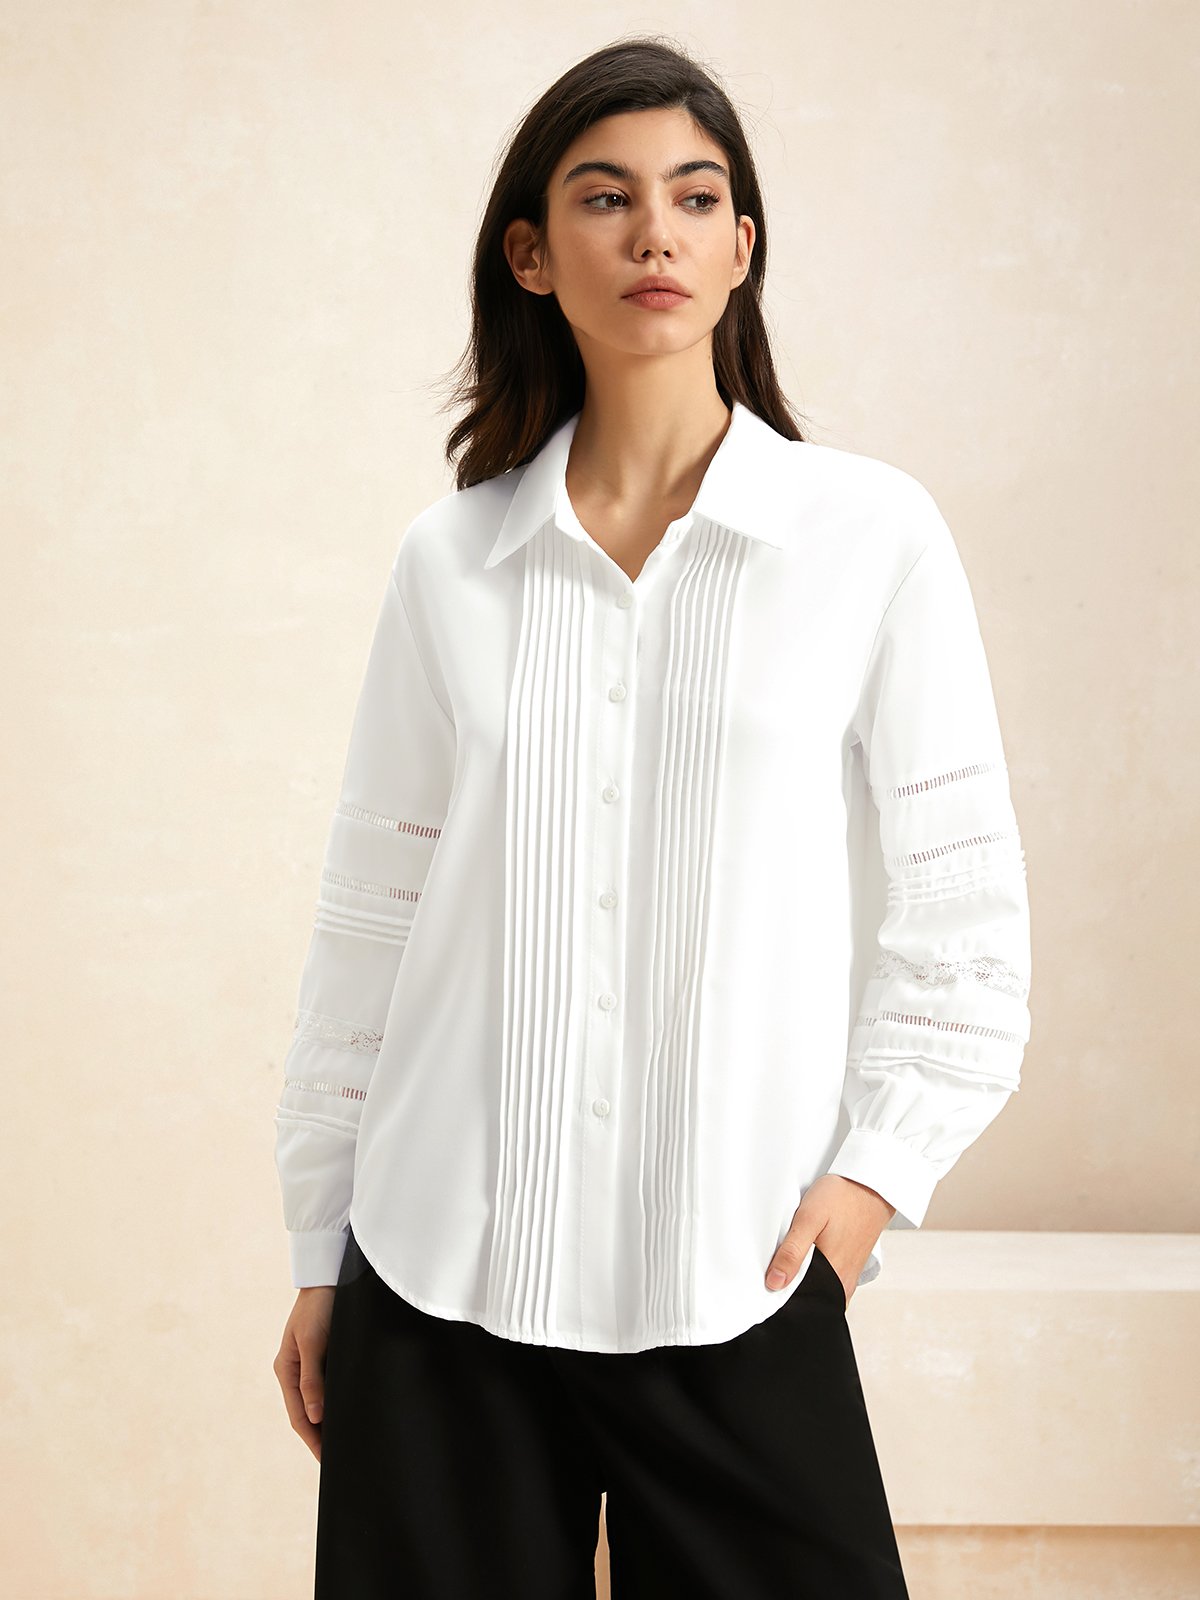 Shirt Collar Long Sleeve Plain Lightweight Loose TUNIC Blouse For Women